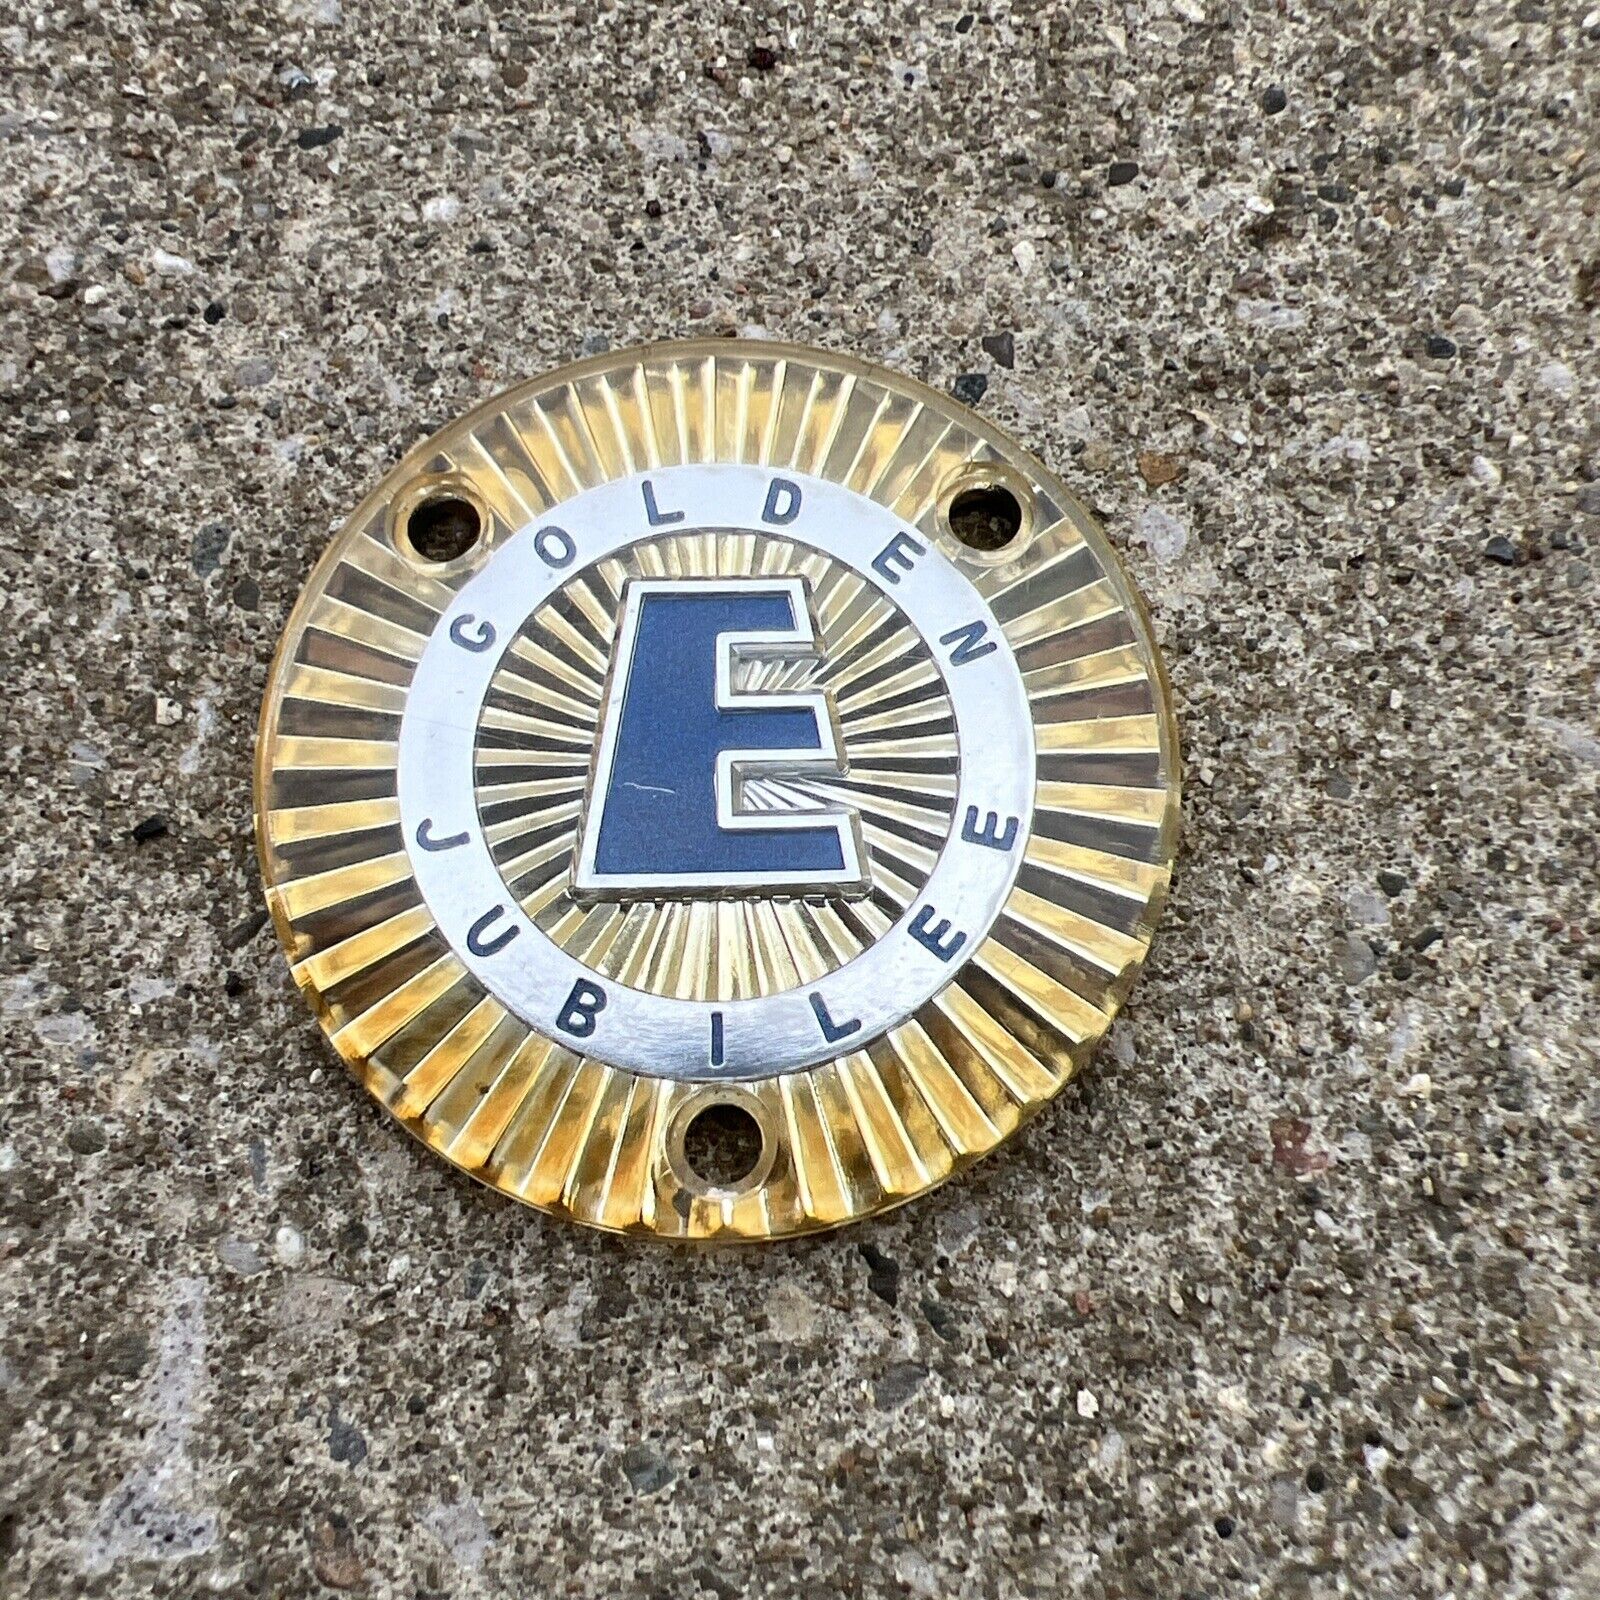 Evinrude GOLDEN JUBILEE Cowling Emblem Badge  Vintage Plastic 